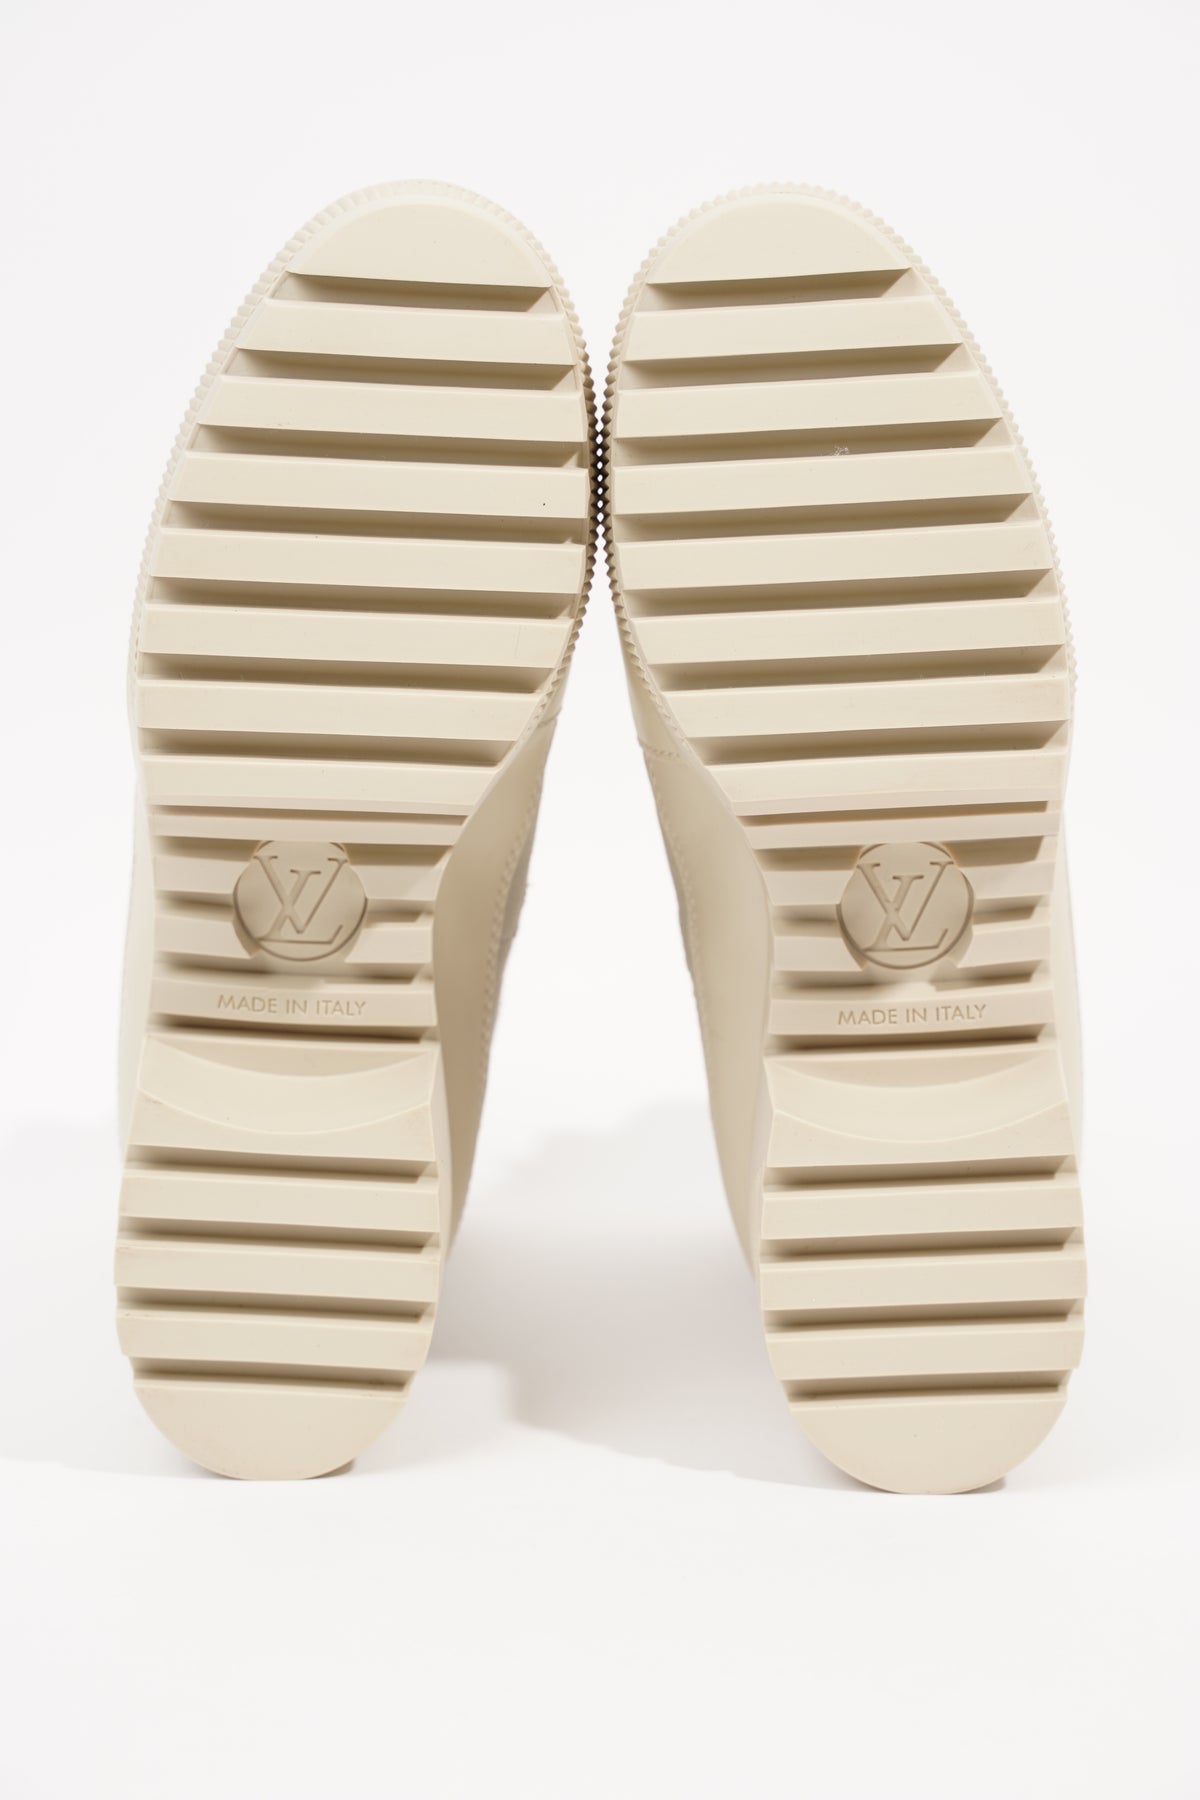 Louis Vuitton Laureate Platform Desert Olive Boots SZ 36.5 - ShopperBoard